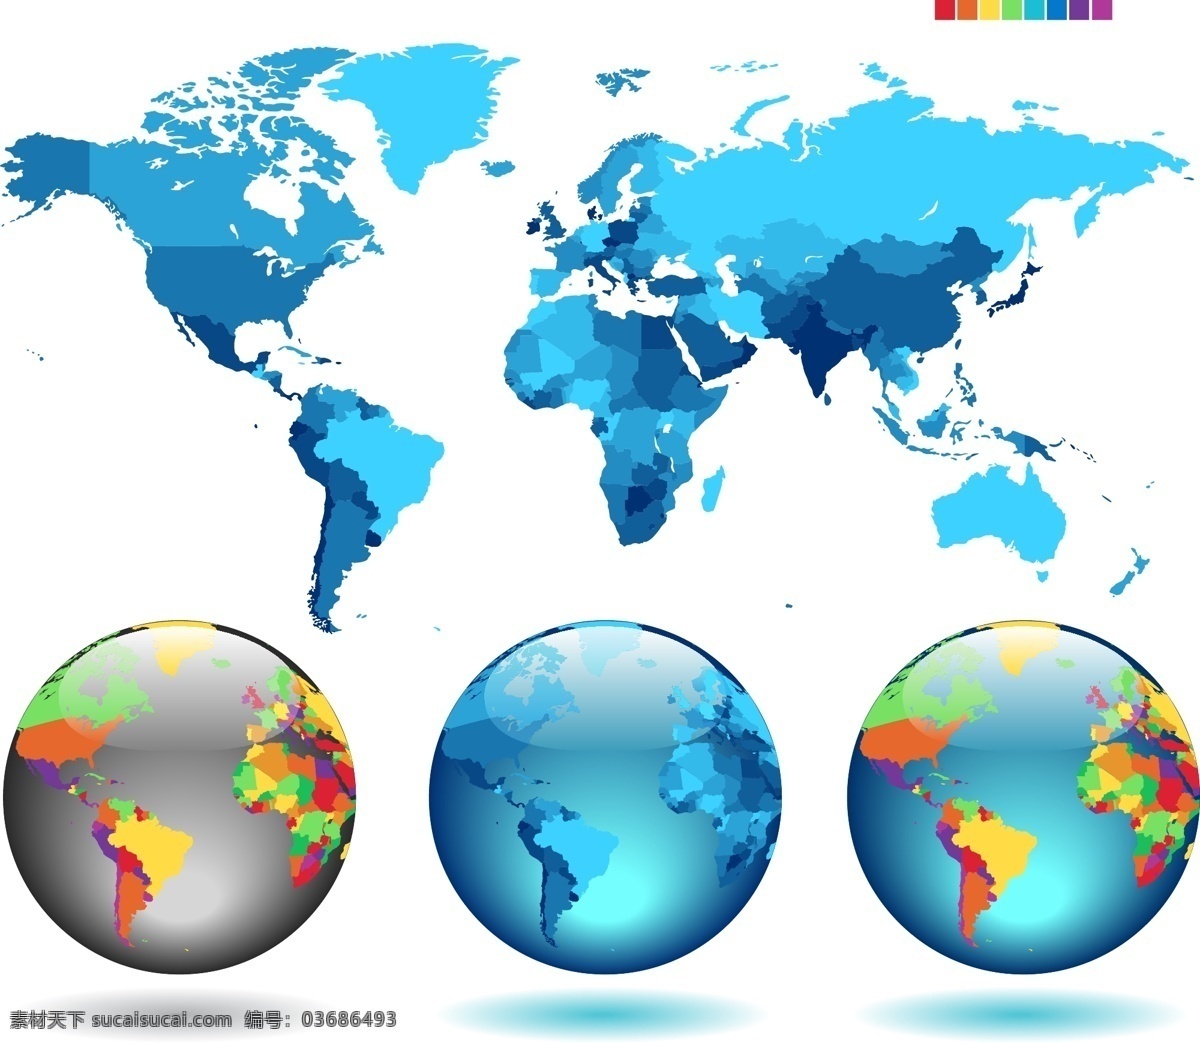 彩色 世界地图 矢量图 世界地图图片 中文版 世界地图全图 地球 蓝色 地图 免费 矢量 彩色版图 白色